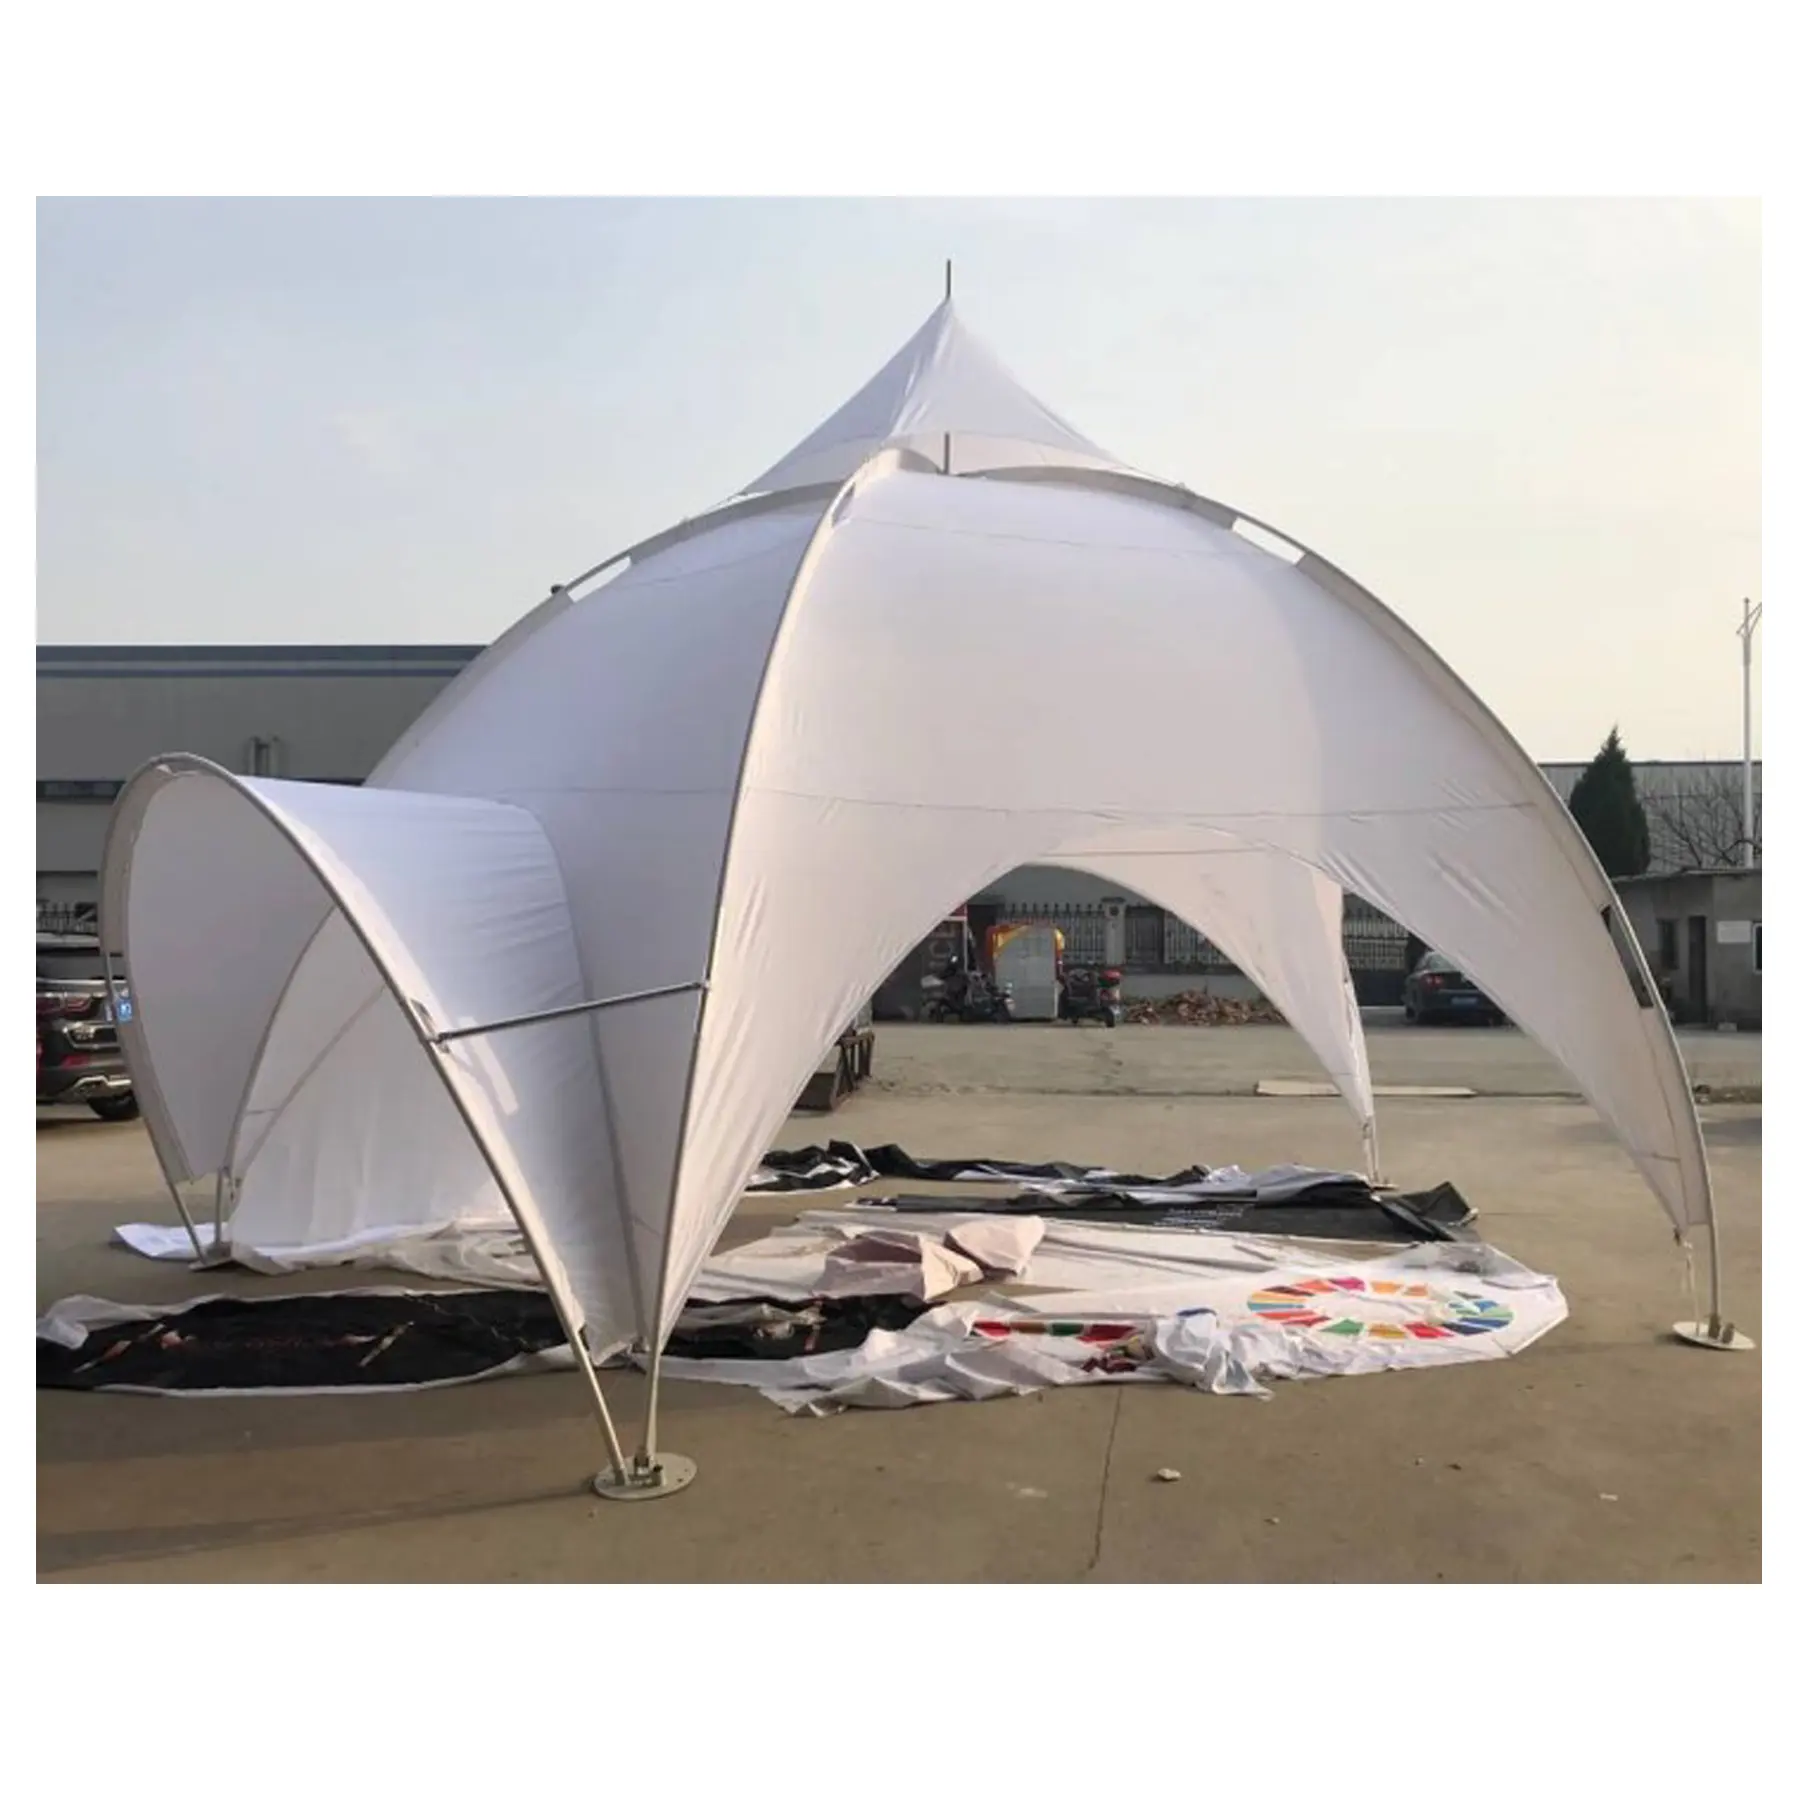 Beyaz reklam kubbeli çadırlar, Pentagonal kemer örümcek çadır kemer ve duvarlar